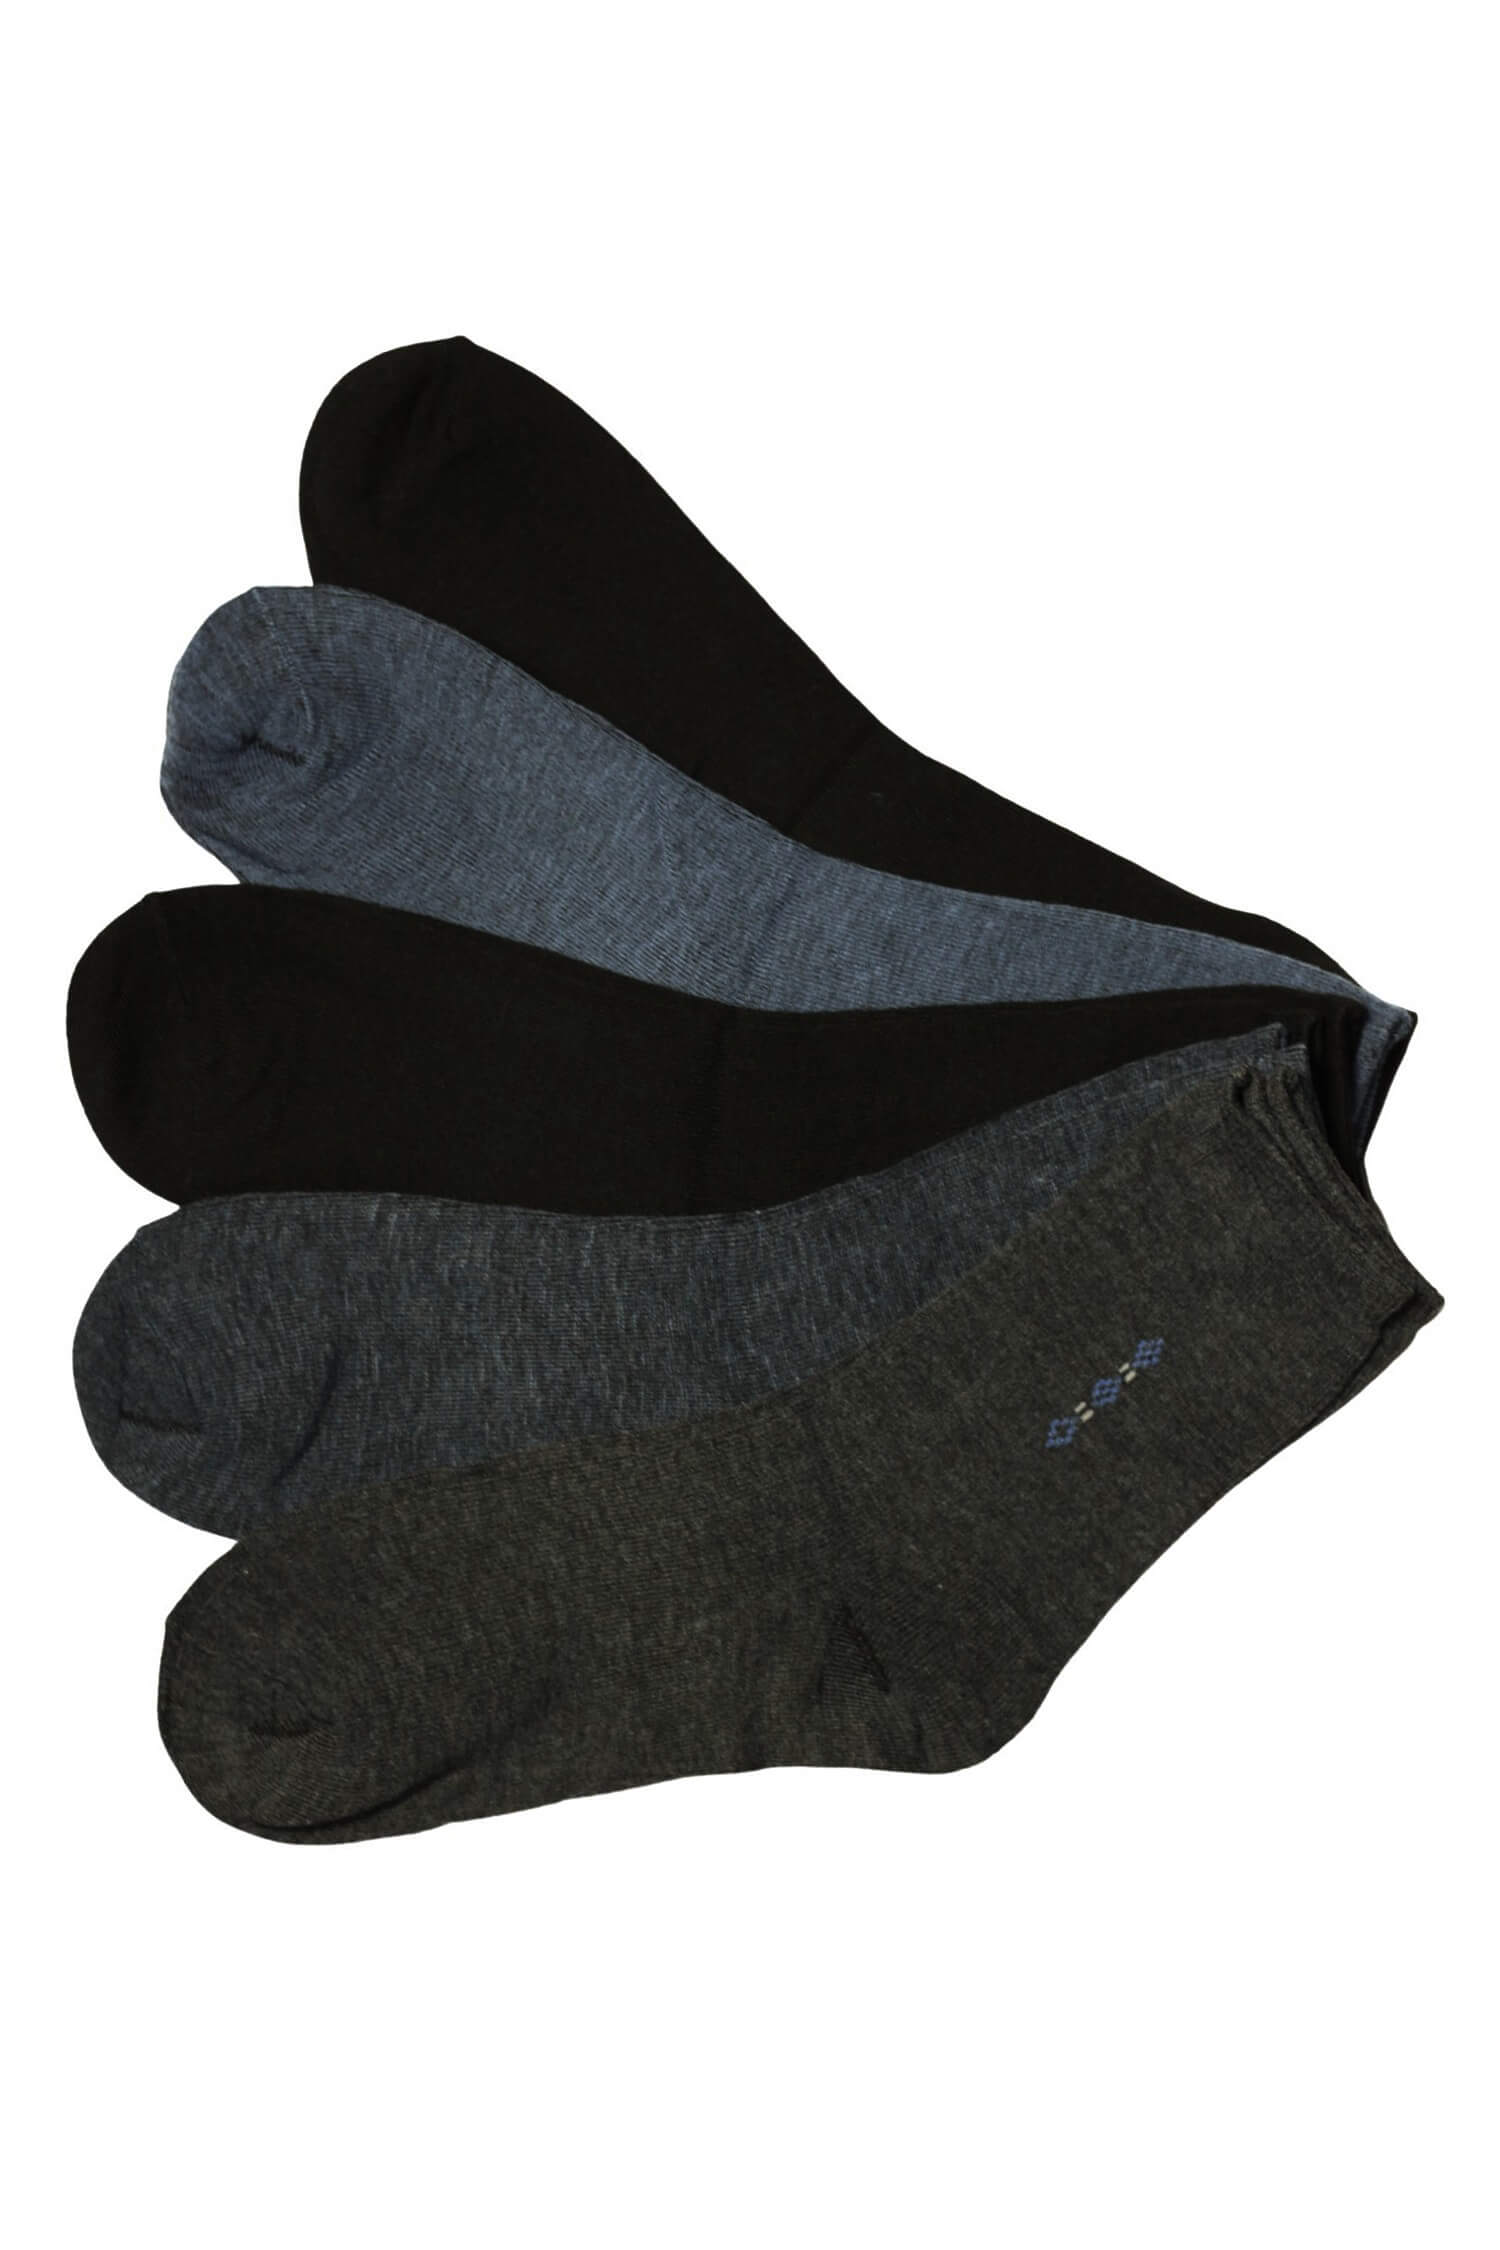 Pánské ponožky bambus B-901 - 5 párů 43-46 vícebarevná